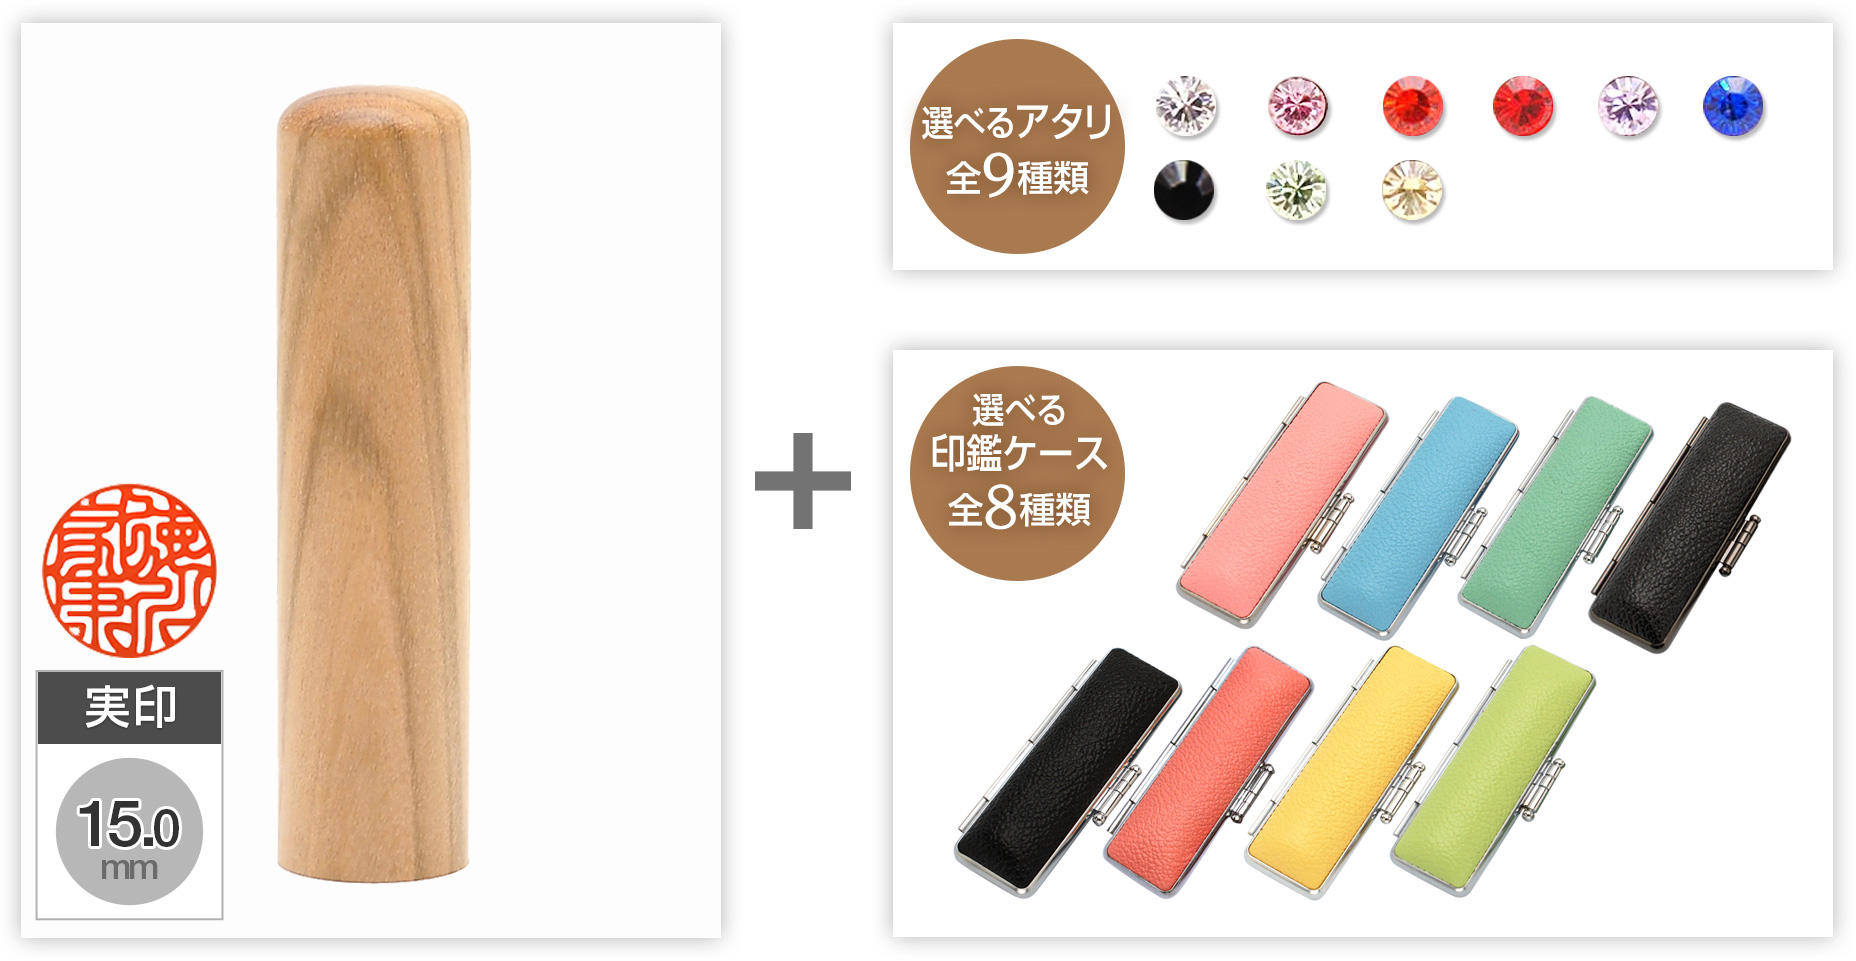 【セール】実印山桜15.0mm選べるアタリ・印鑑ケース セット